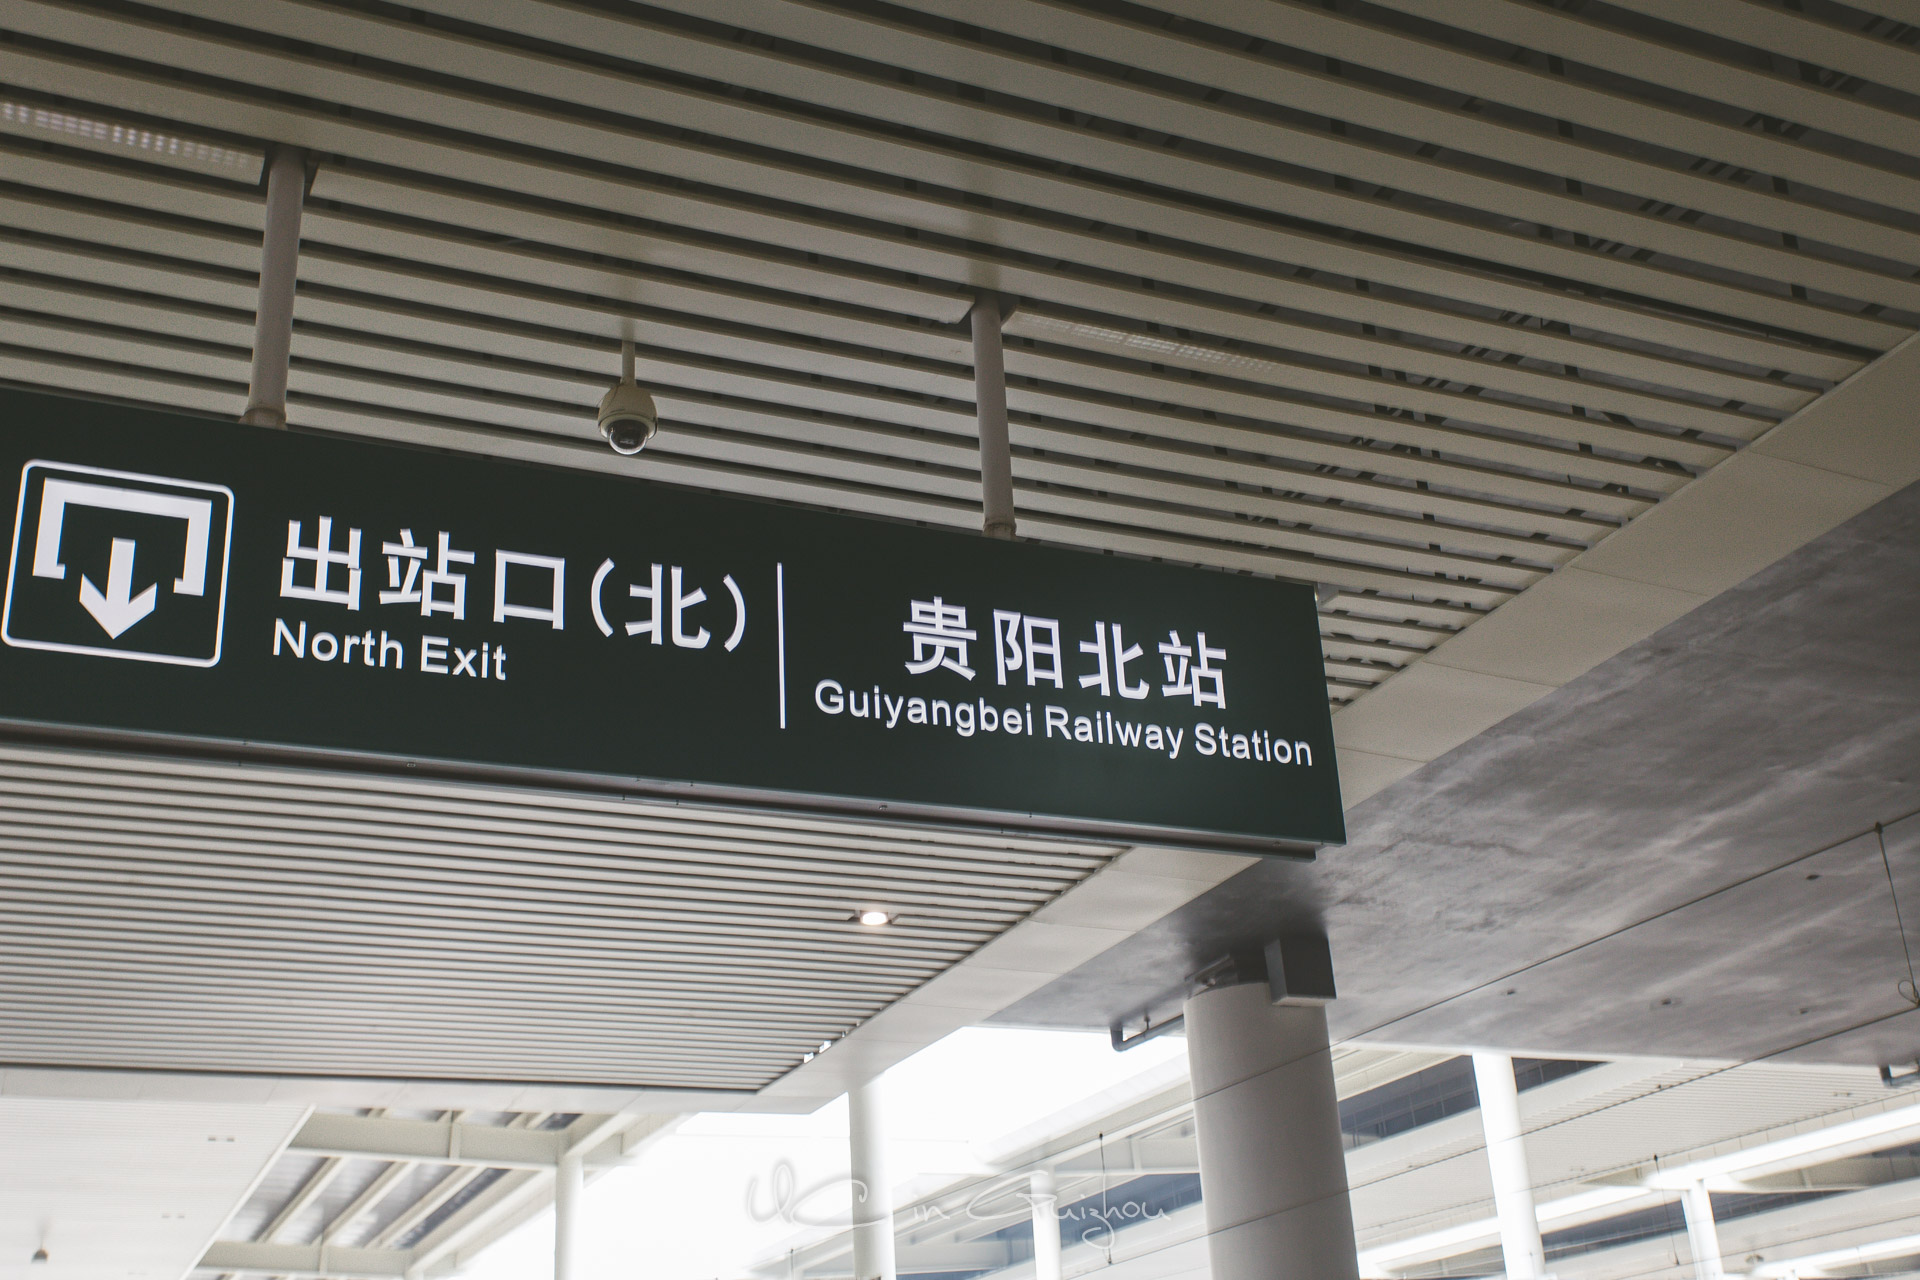 我们乘坐的班次是到贵阳北的,所以下车后还要转的士到贵阳站.